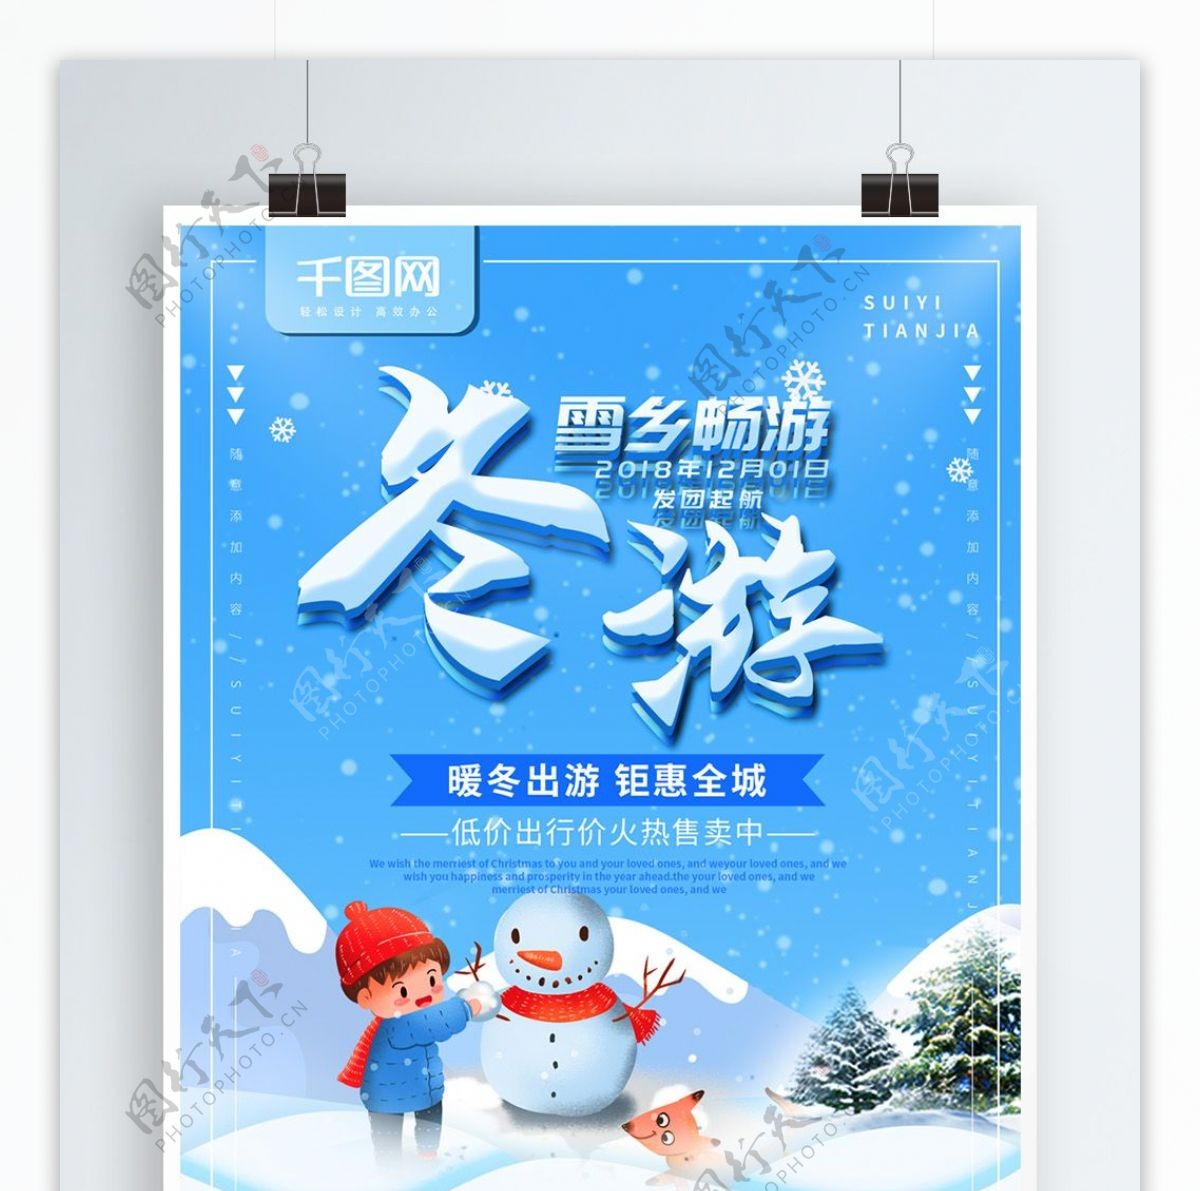 简约蓝色冬季旅游宣传海报psd